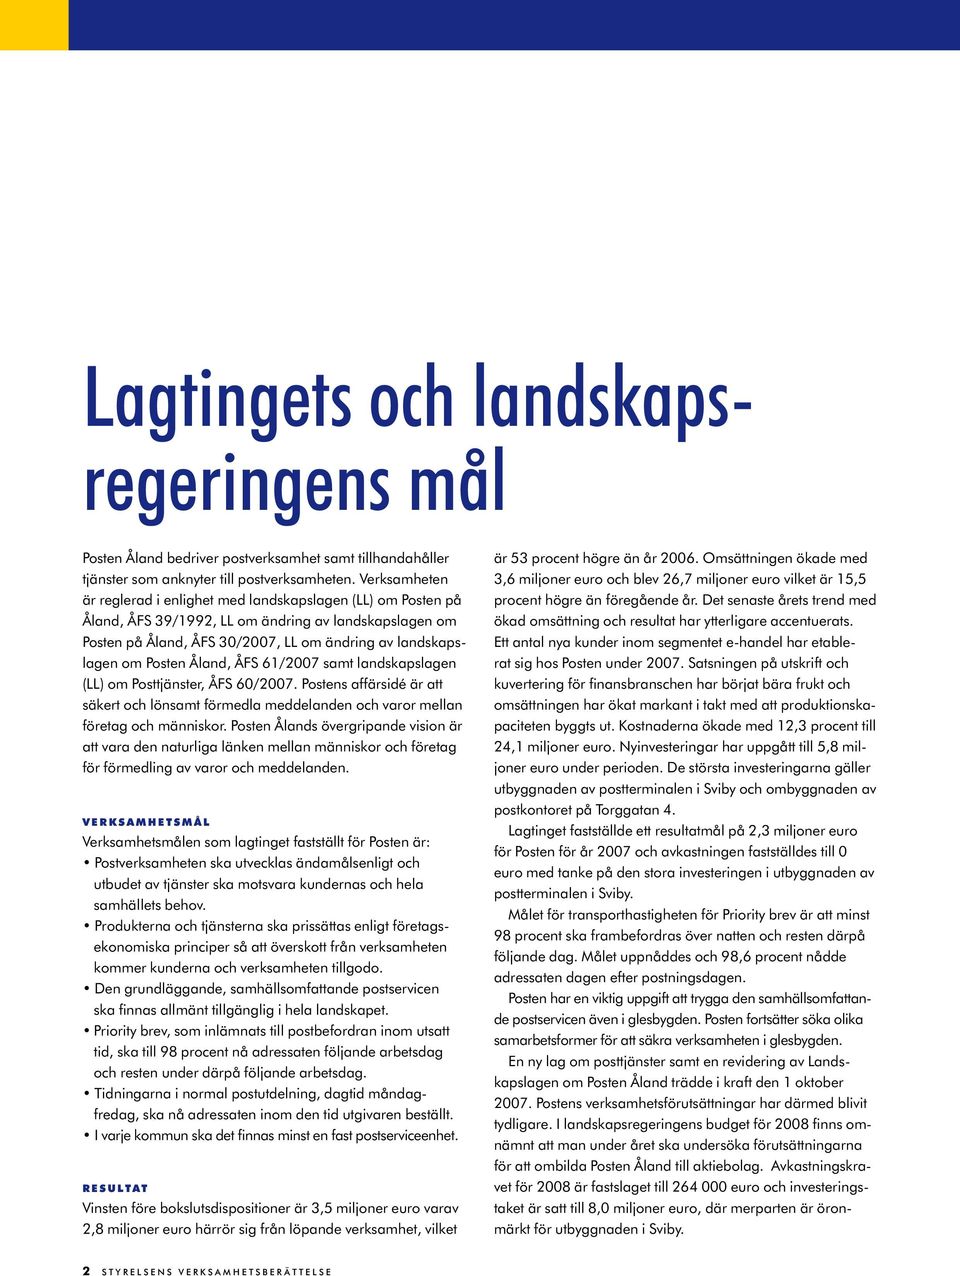 Åland, ÅFS 61/2007 samt landskapslagen (LL) om Posttjänster, ÅFS 60/2007. Postens affärsidé är att säkert och lönsamt förmedla meddelanden och varor mellan företag och människor.